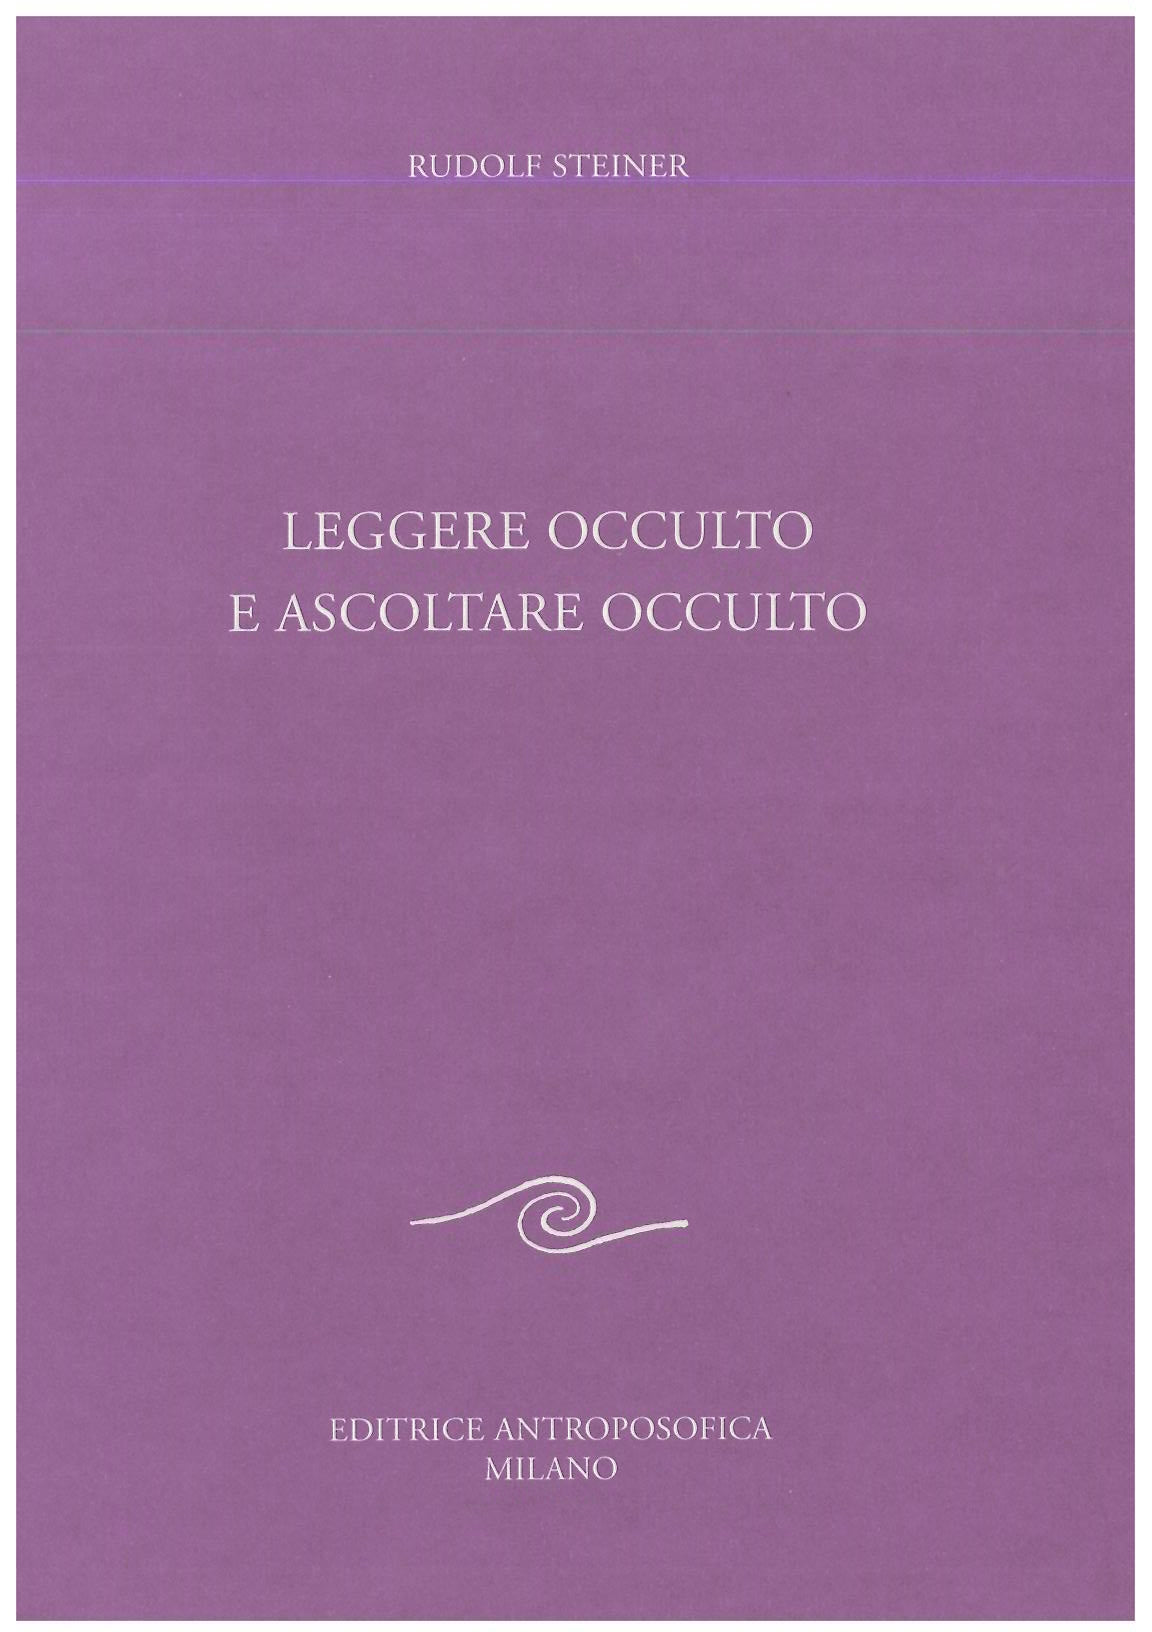 Leggere occulto e ascoltare occulto - Rudolf Steiner